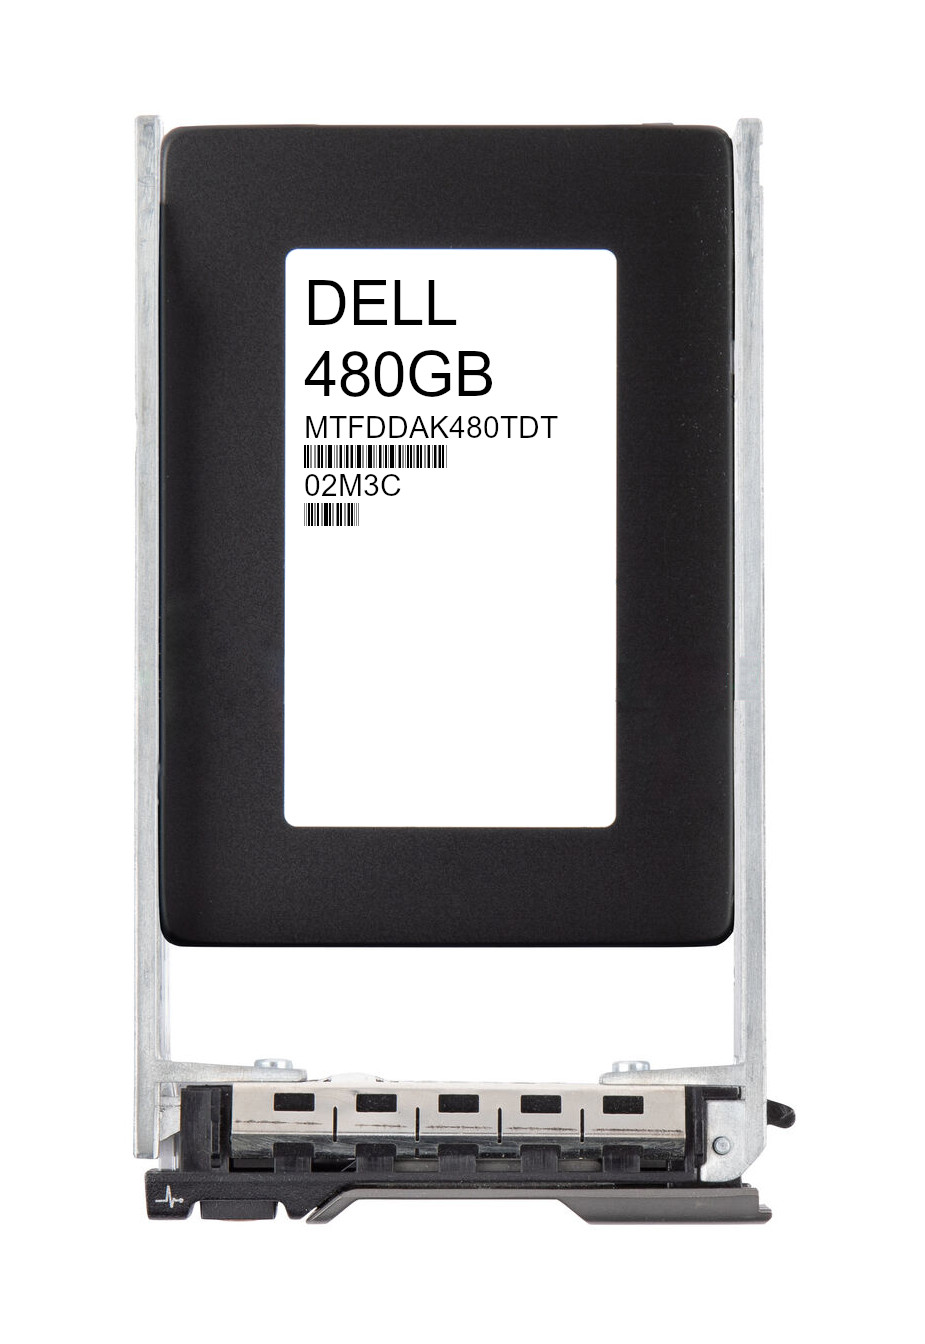 Dell EMC Micron 480GB MTFDDAK480TDT SSD 512e SATA 6Gb/s 2.5" 02M3C